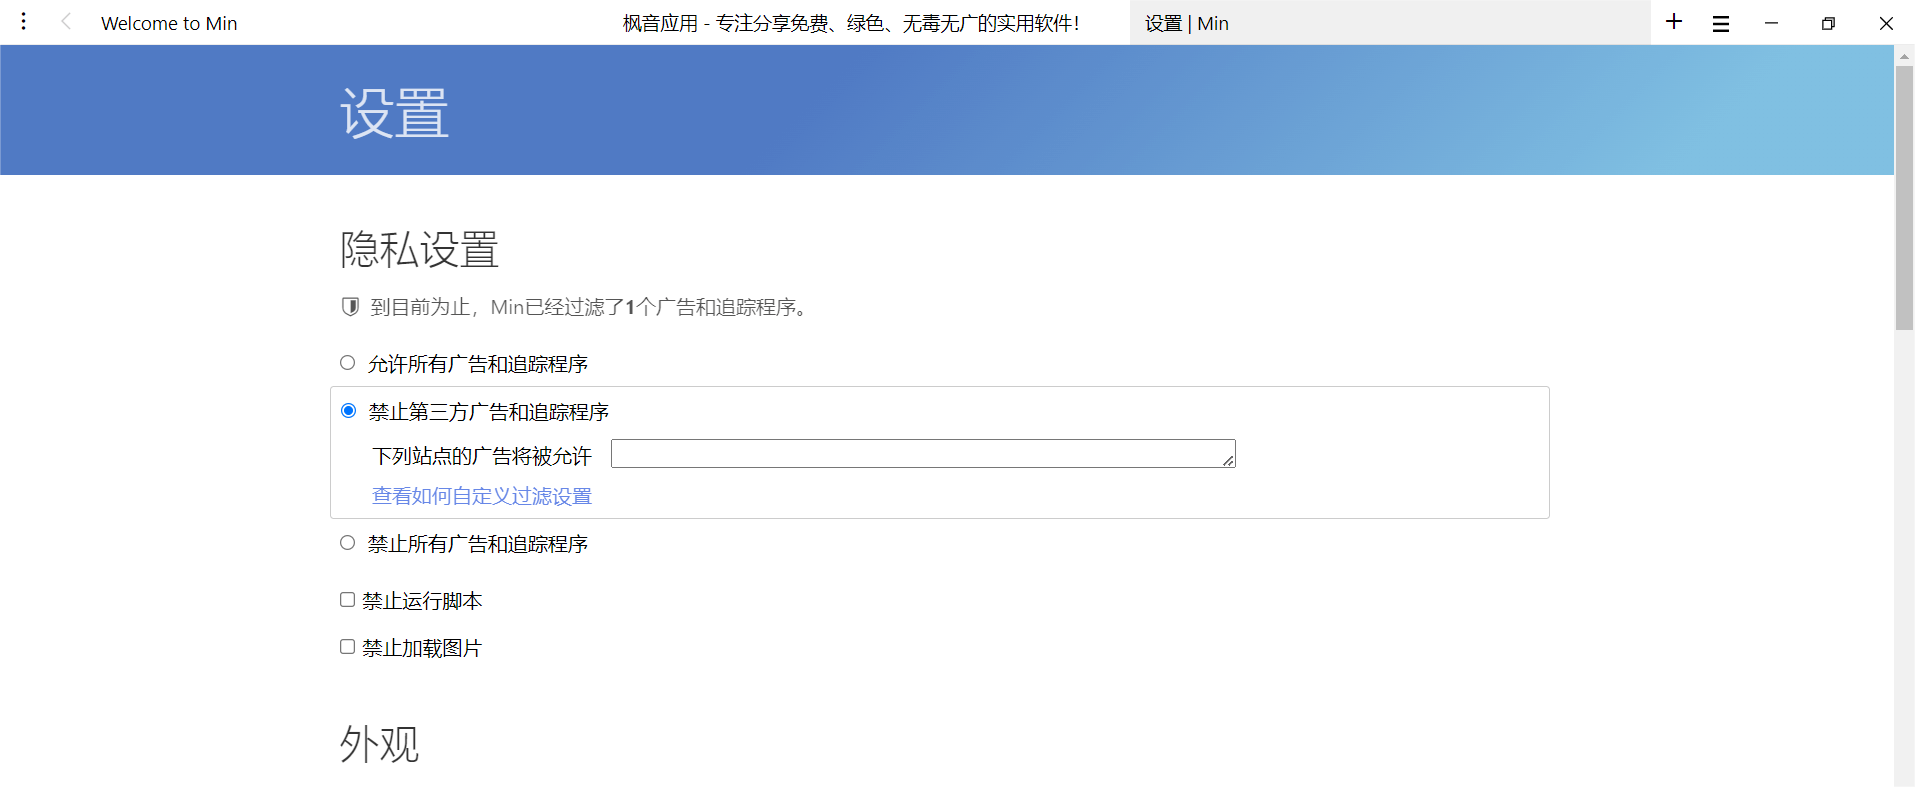 Windows Min 浏览器_v1.29.0 便携版